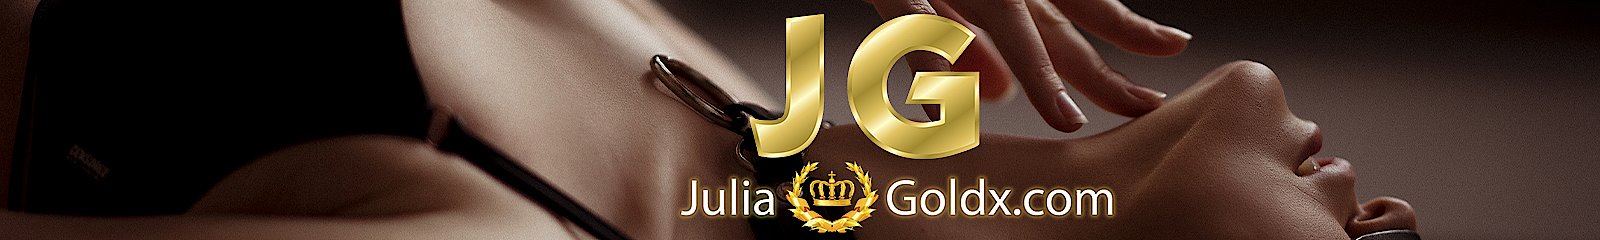 Julia Gold